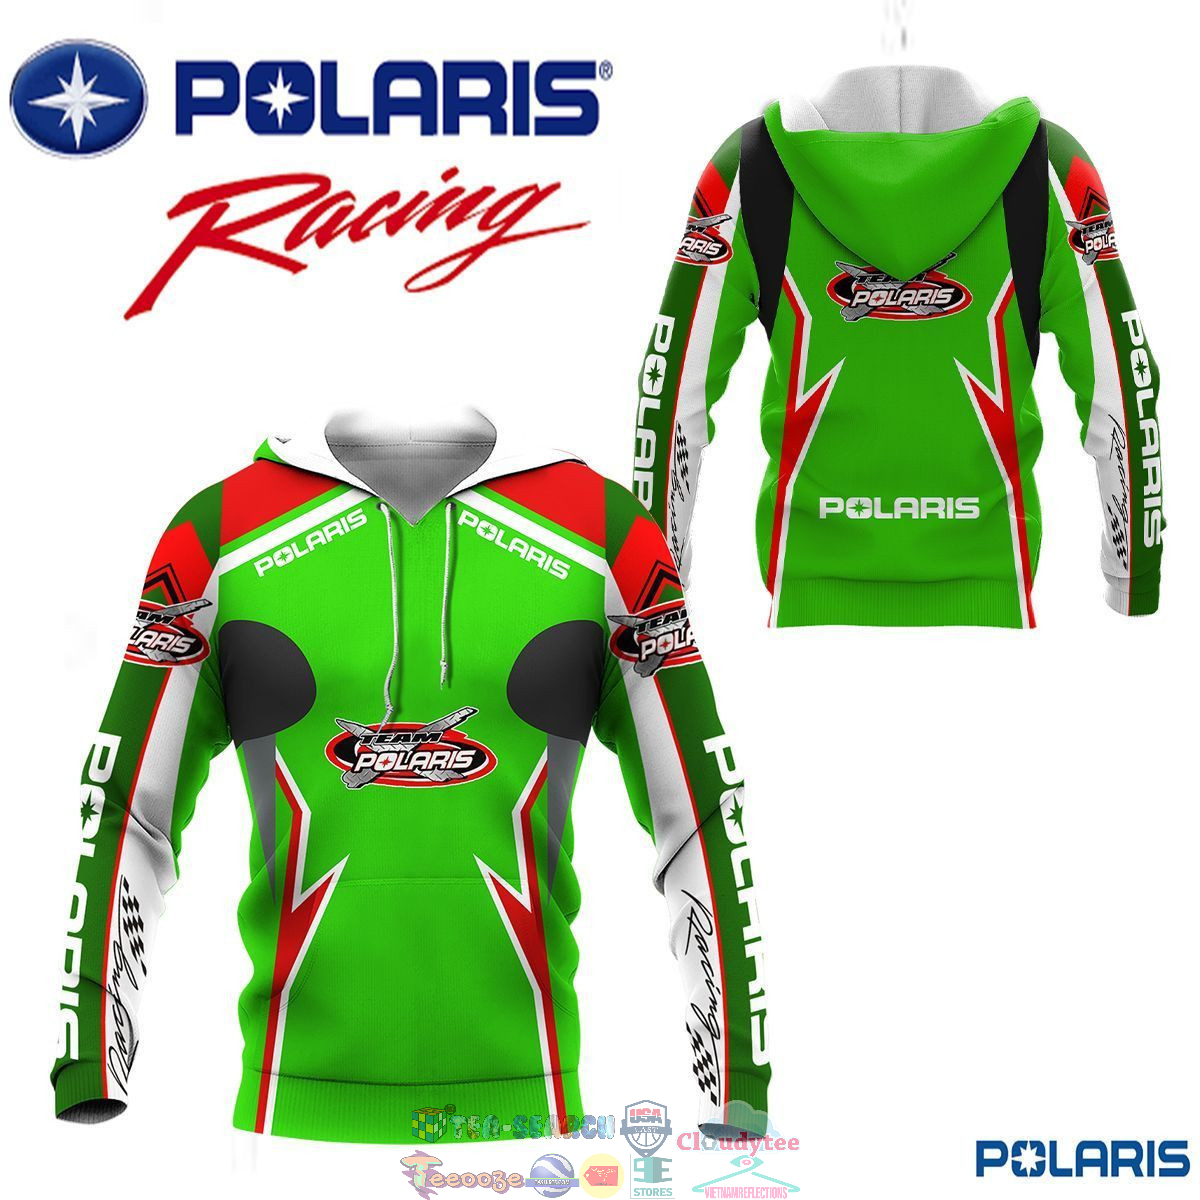 Polaris Racing Team ver 8 3D hoodie and t-shirt